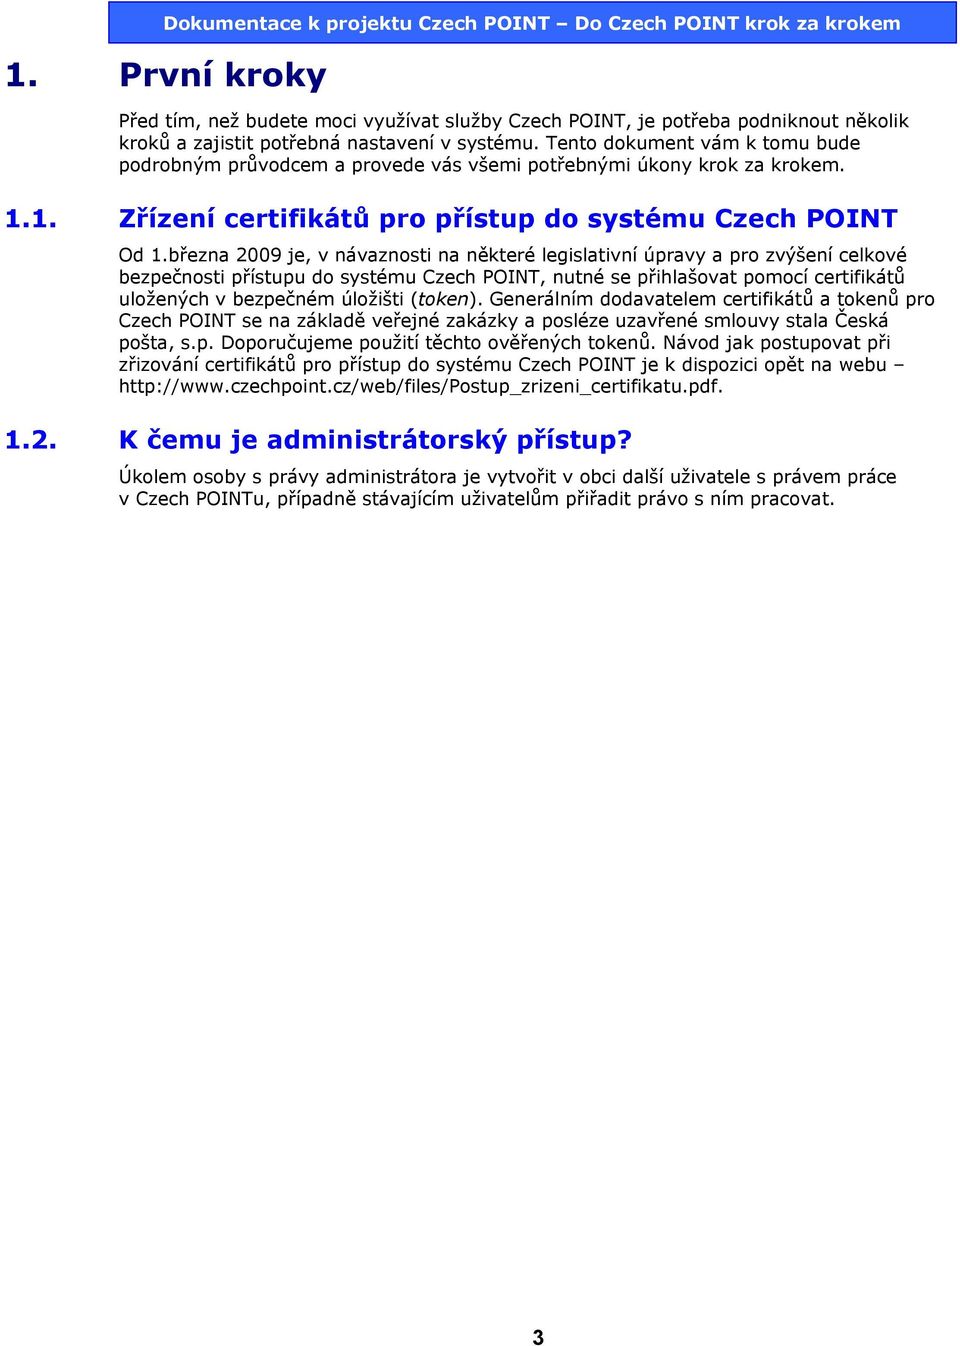 března 2009 je, v návaznosti na některé legislativní úpravy a pro zvýšení celkové bezpečnosti přístupu do systému Czech POINT, nutné se přihlašovat pomocí certifikátů uložených v bezpečném úložišti